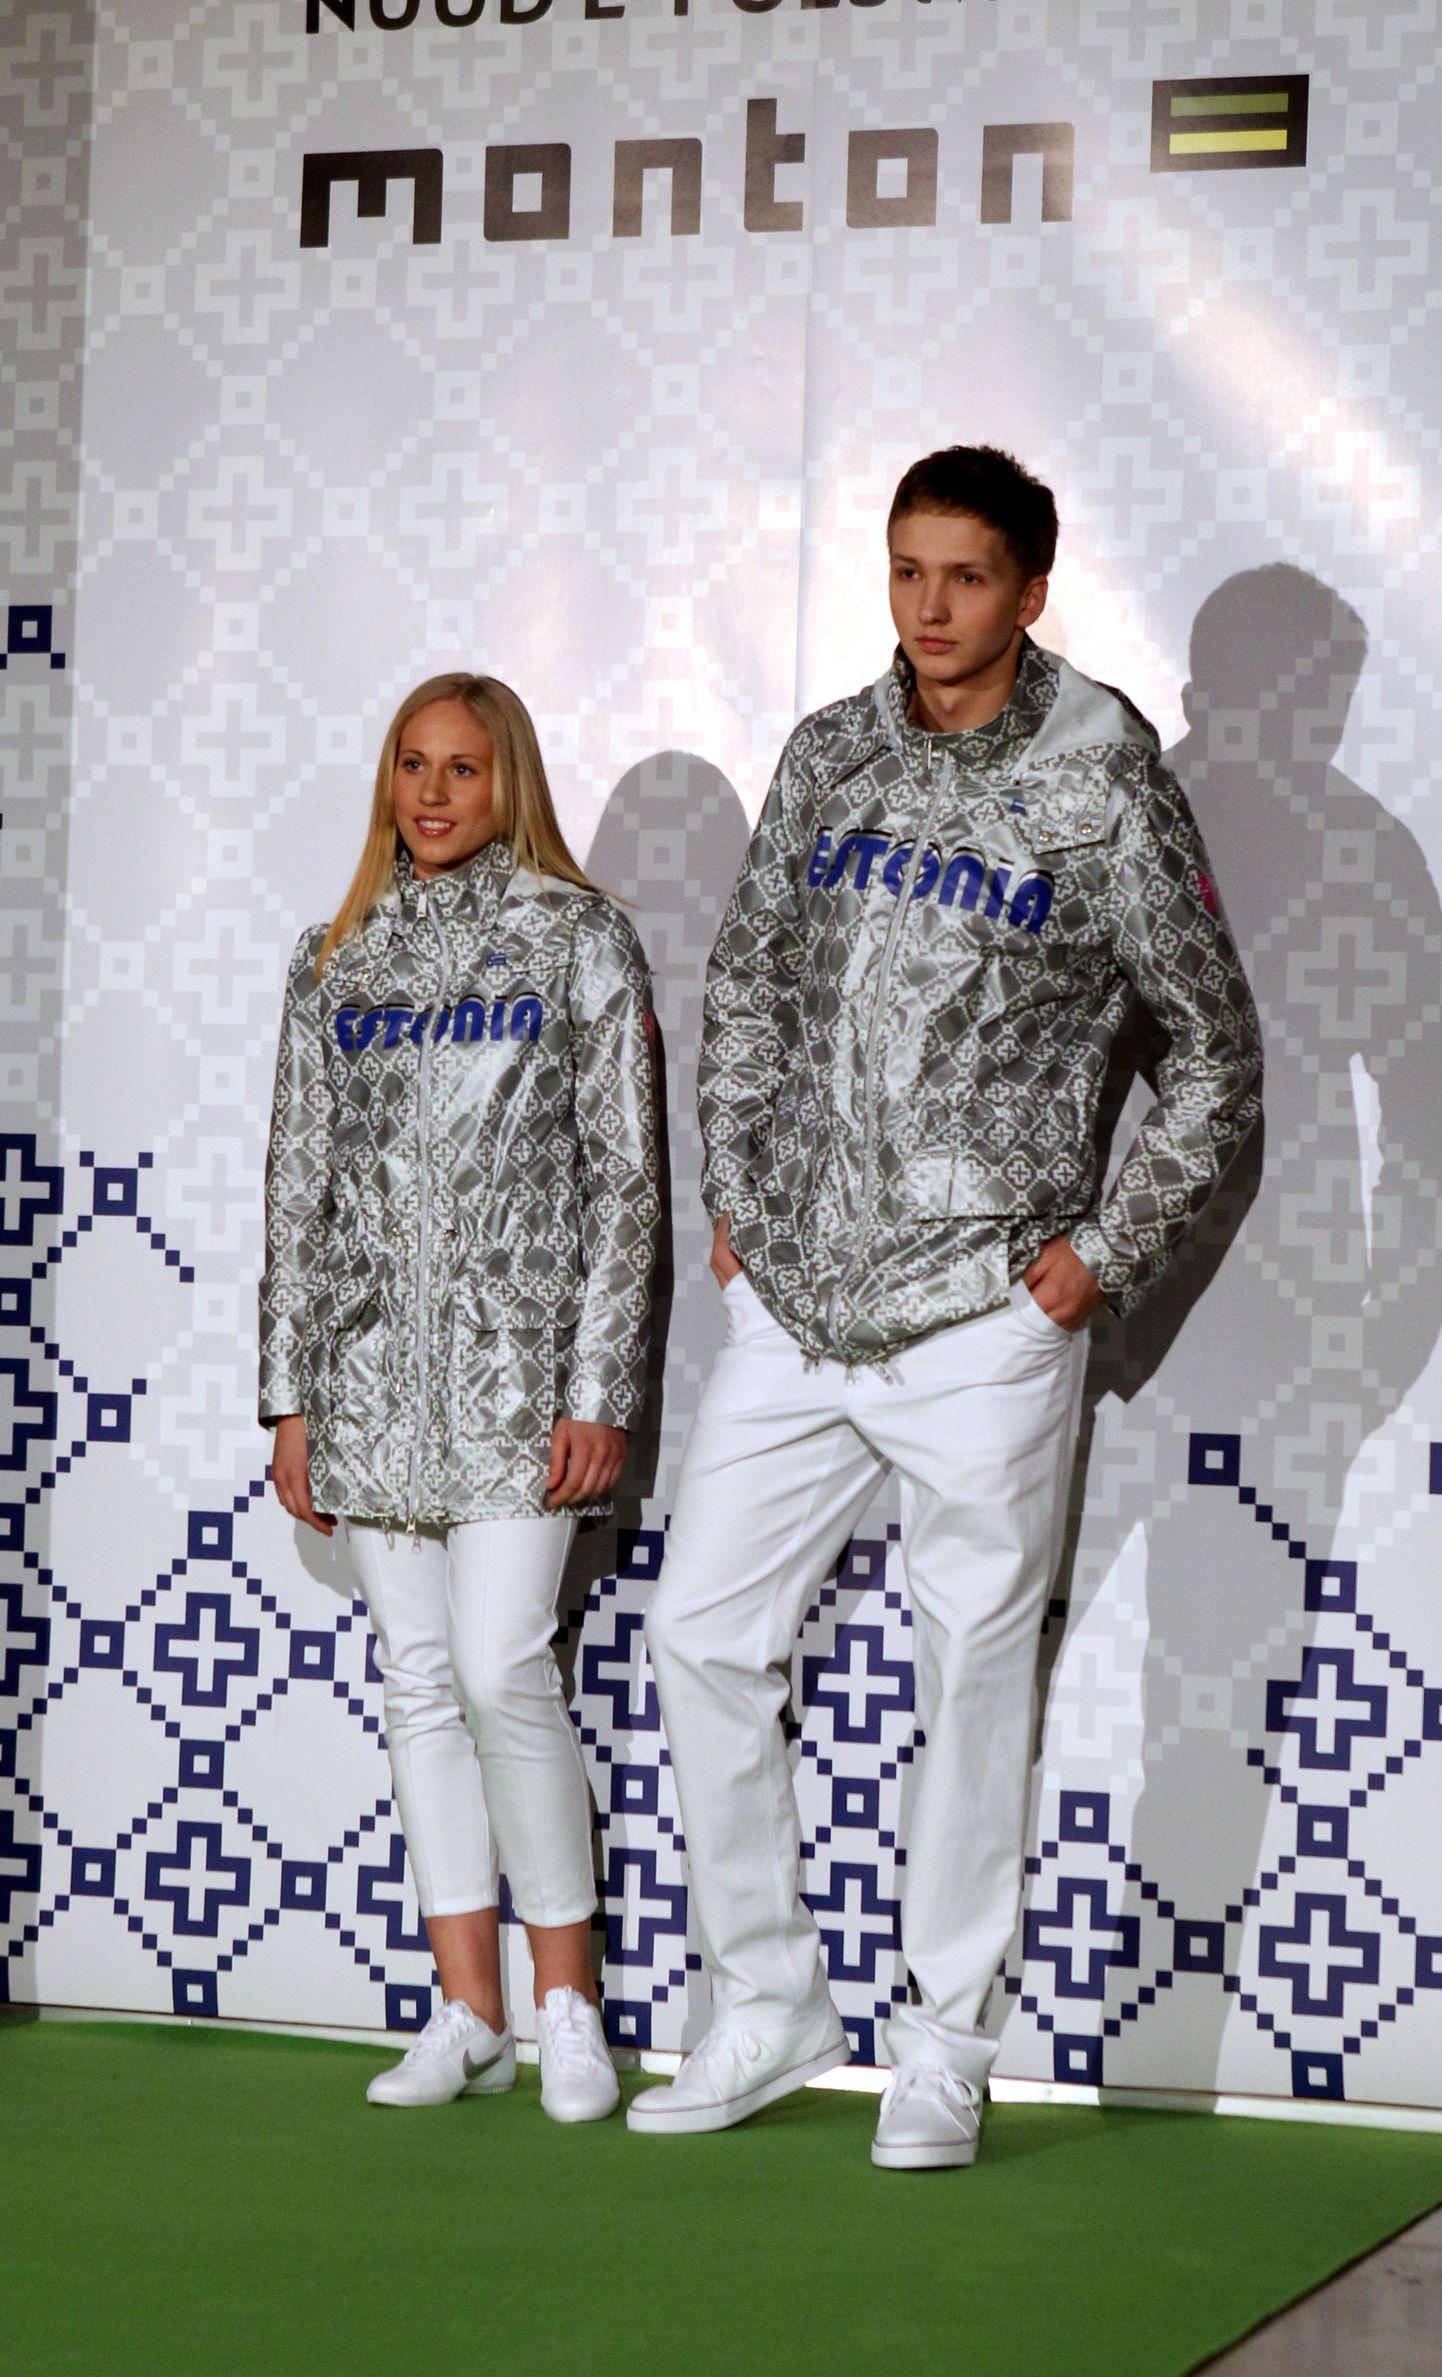 Eesti olümpiakoondise liikmed kannavad Londonis Kihnu rahvamustritega riietust. Pilt oluümpiariiete esitluselt.